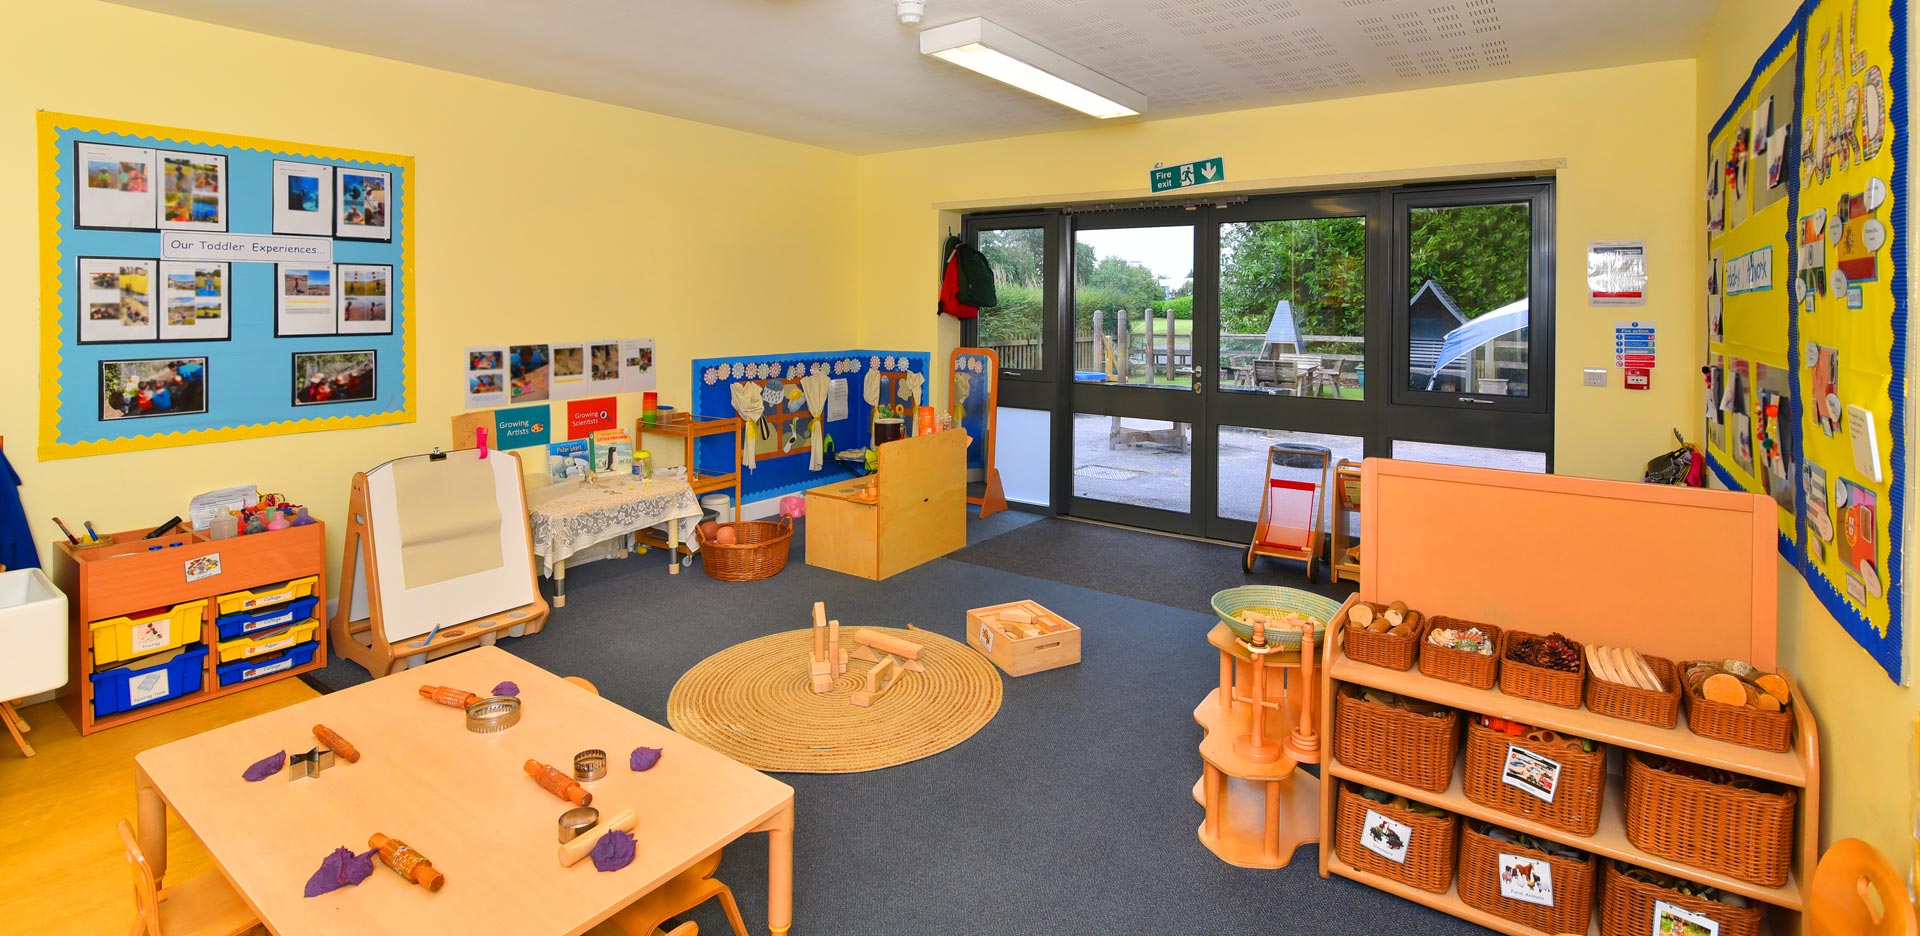 Chilworth Day Nursery and Preschool